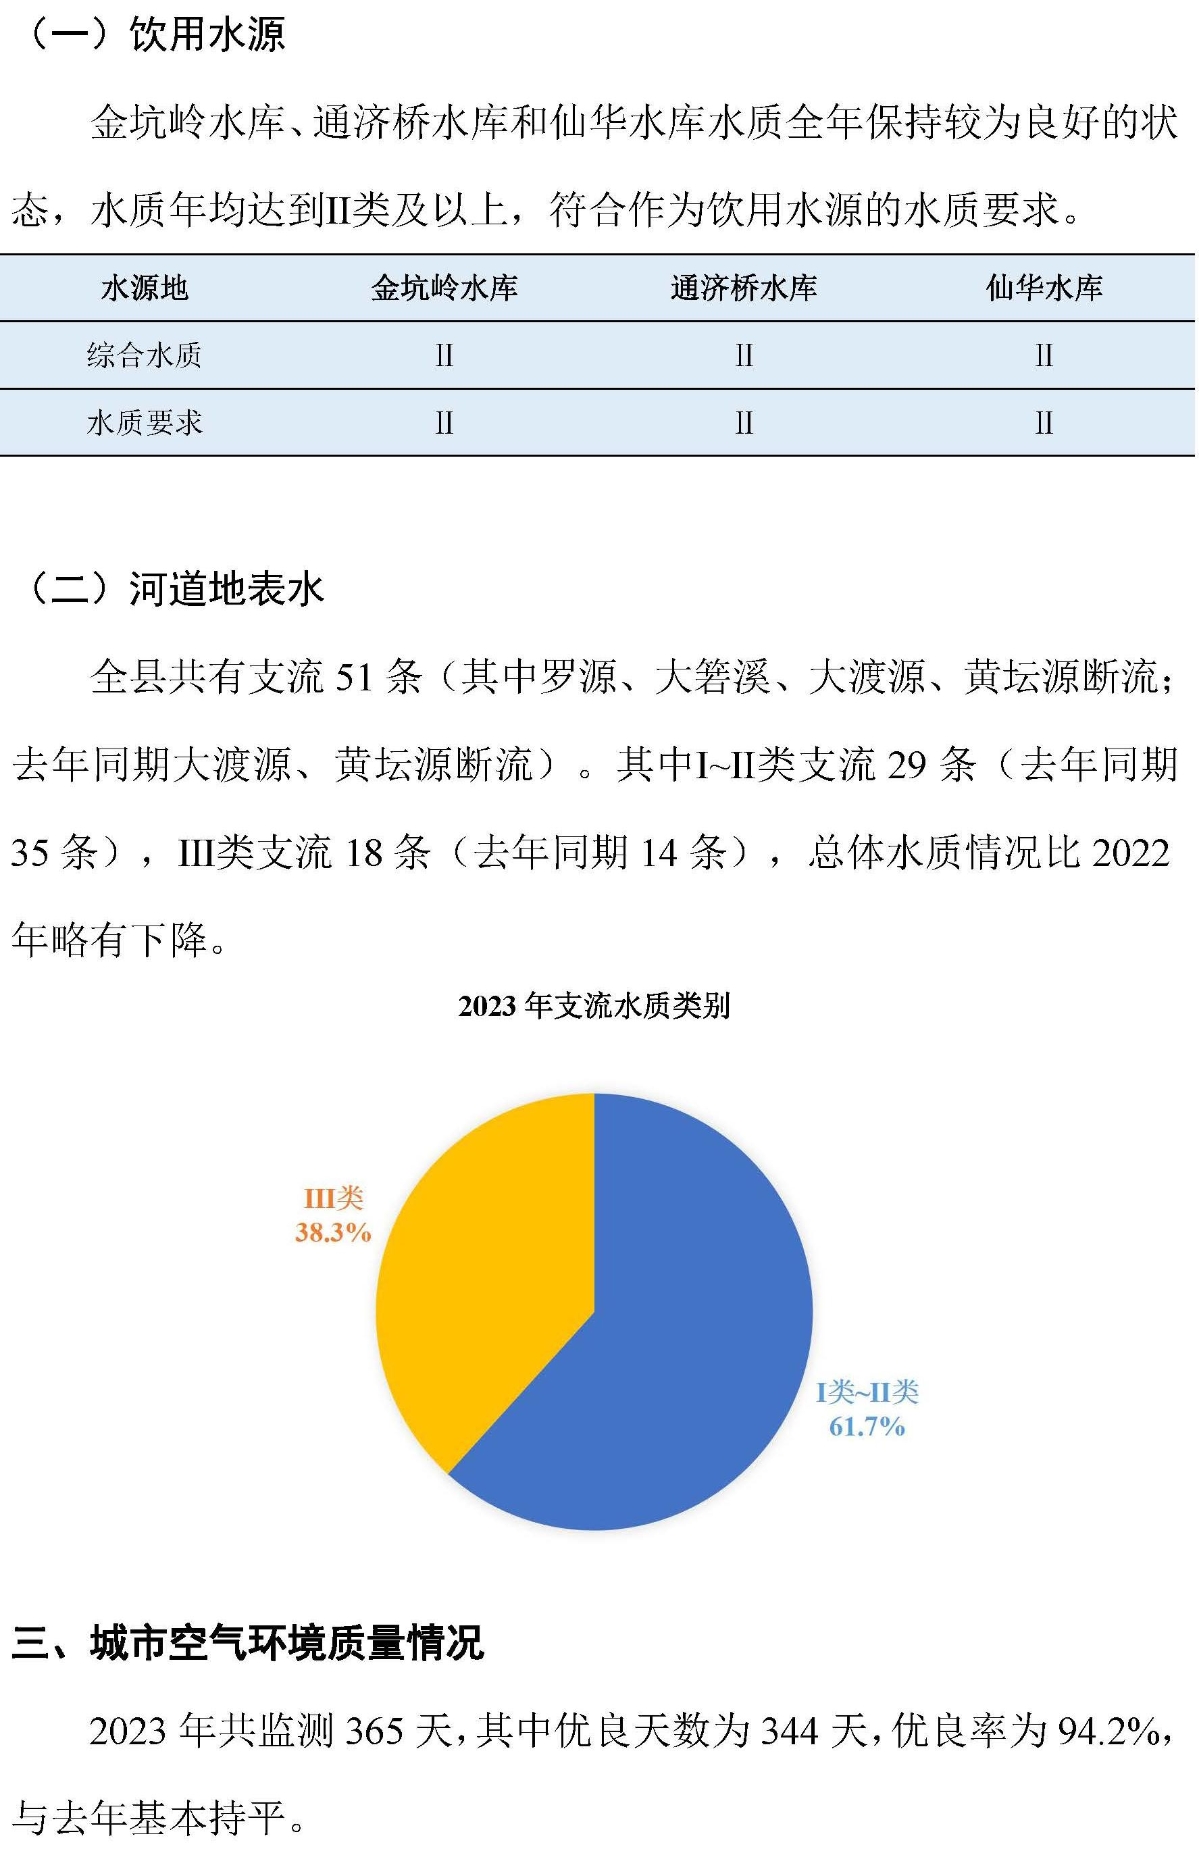 浦江县2023年度环境质量公报图解(2)_页面_1.jpg